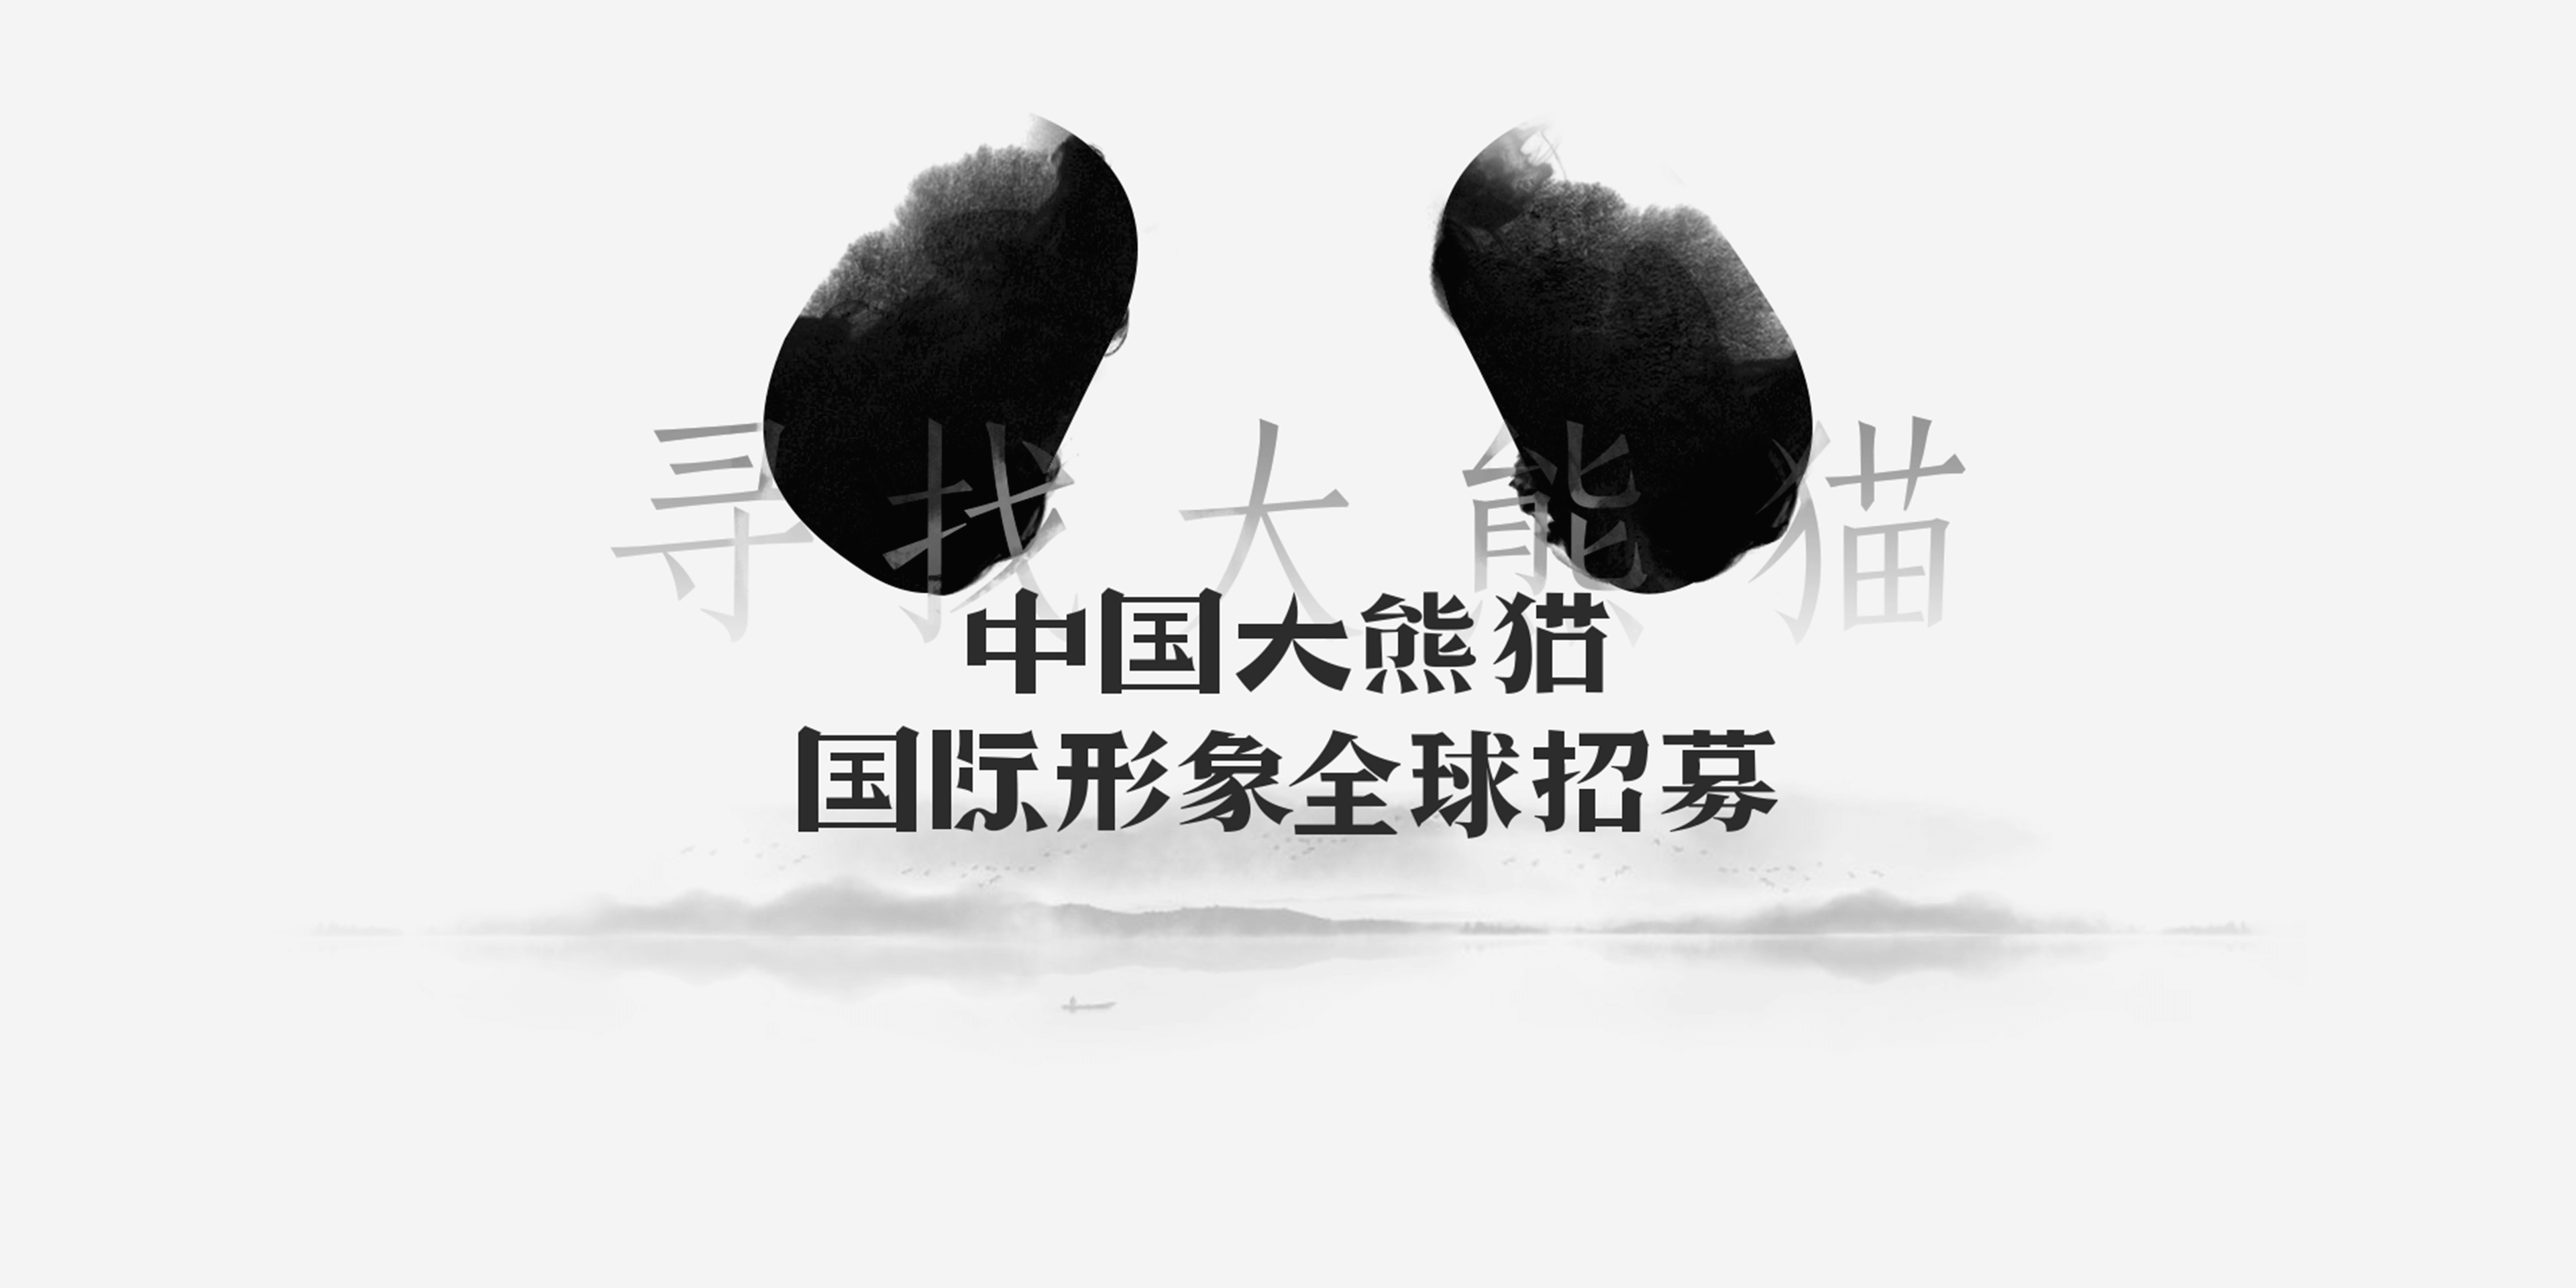 中国大熊猫国际形象设计全球招募大赛.png